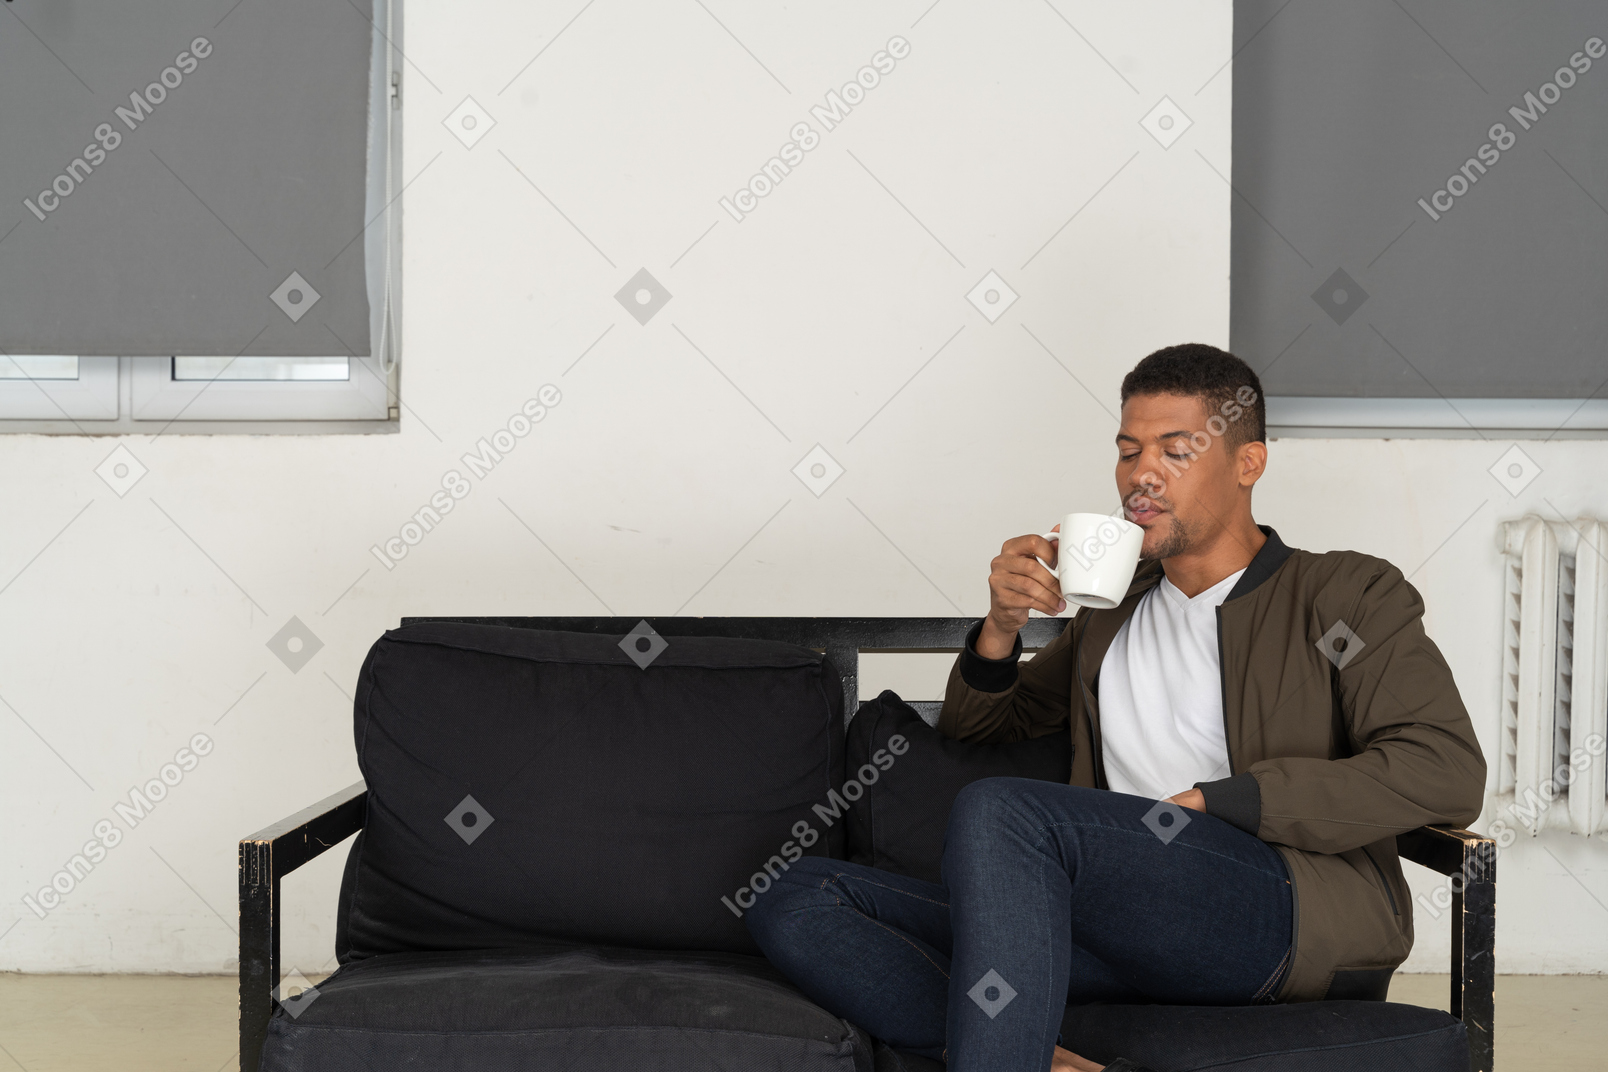 Vista frontal de un joven soñando sentado en un sofá mientras bebe café